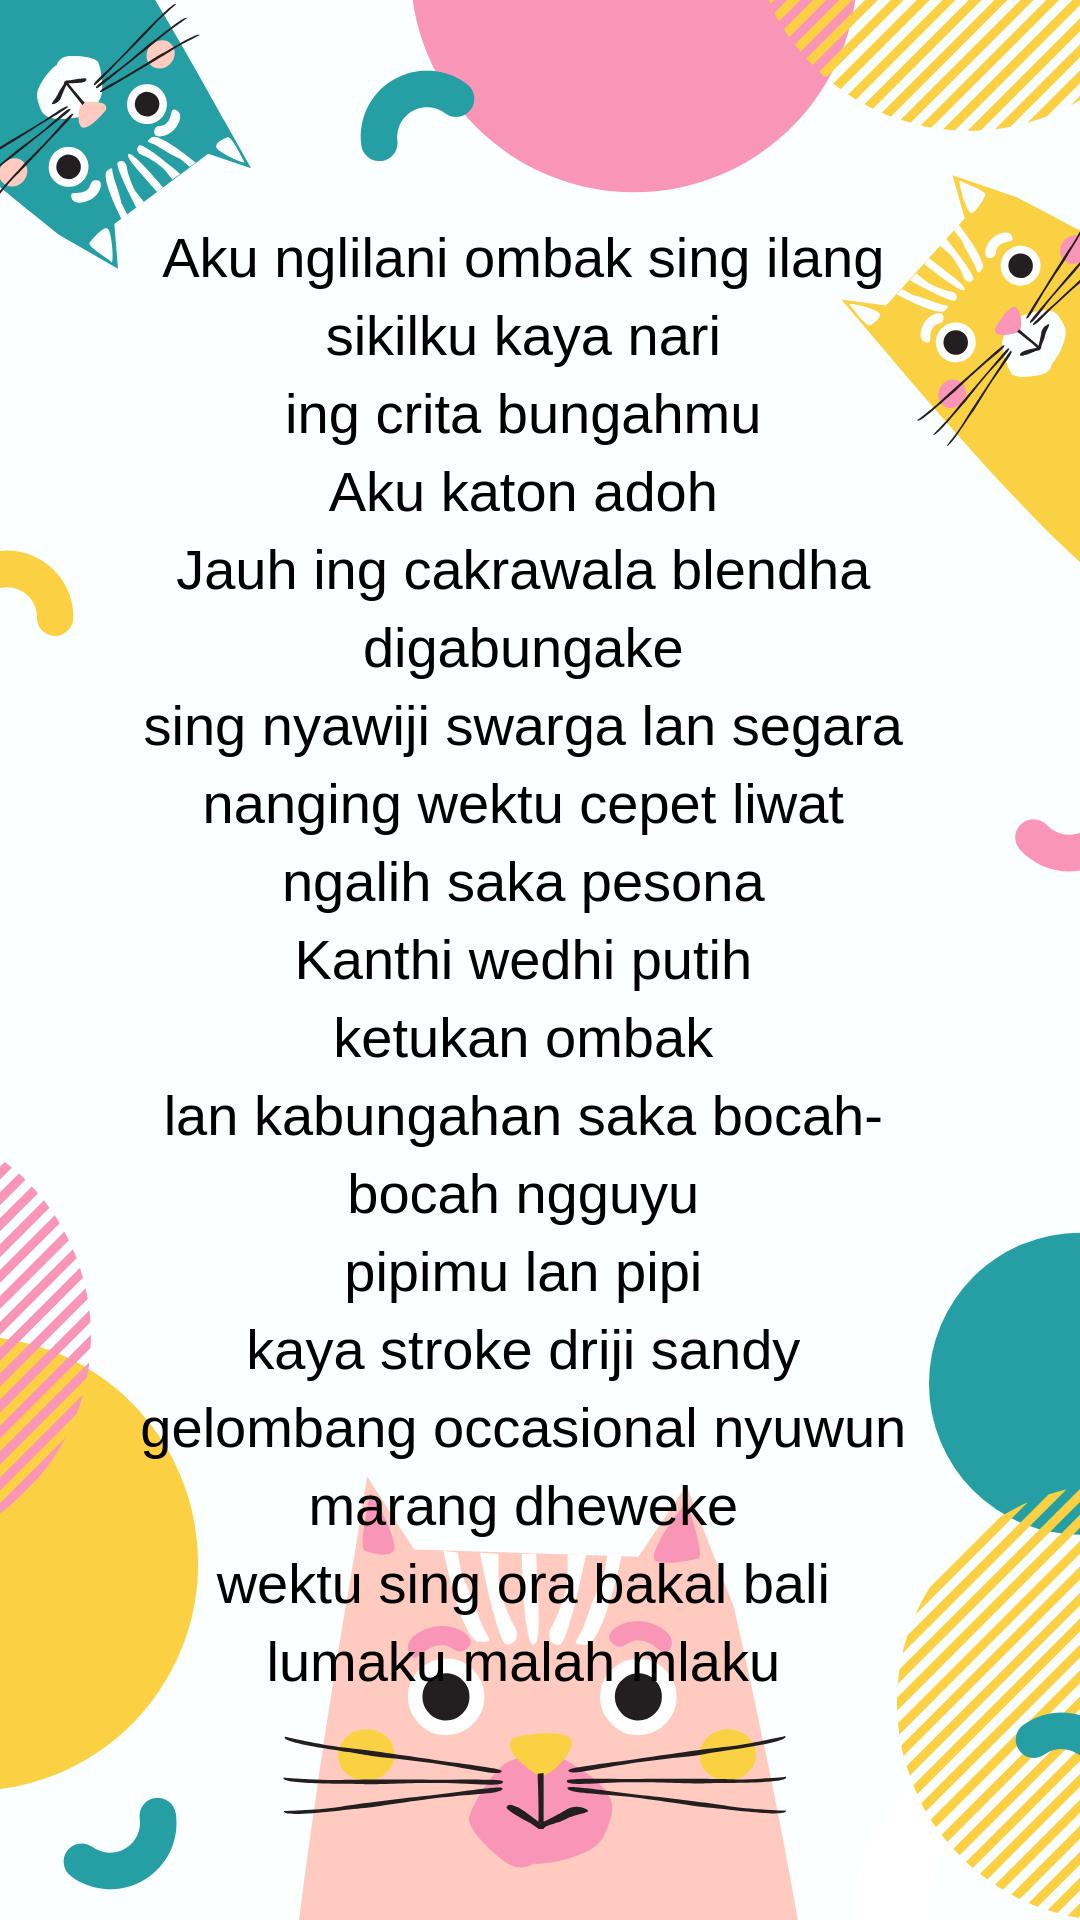 Puisi Jawa Geguritan Lengkap For Android Apk Download